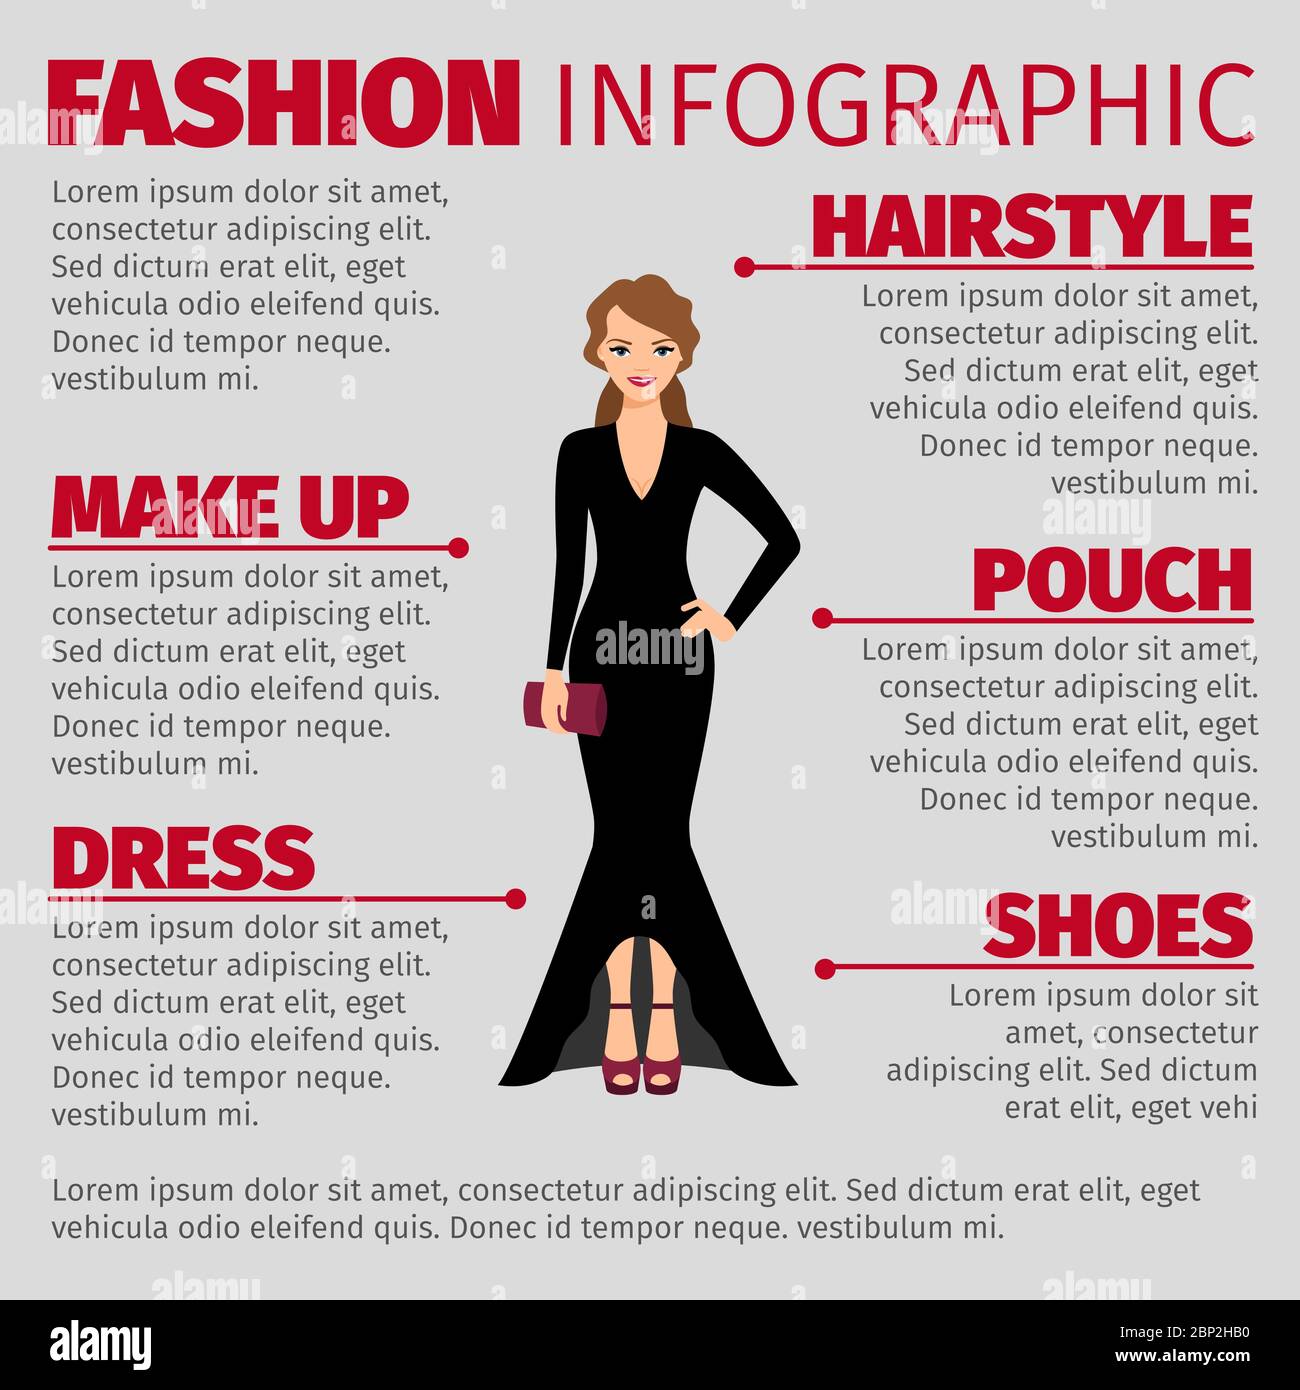 Infographie de mode avec femme dans une robe de soirée. Illustration Vetor Illustration de Vecteur